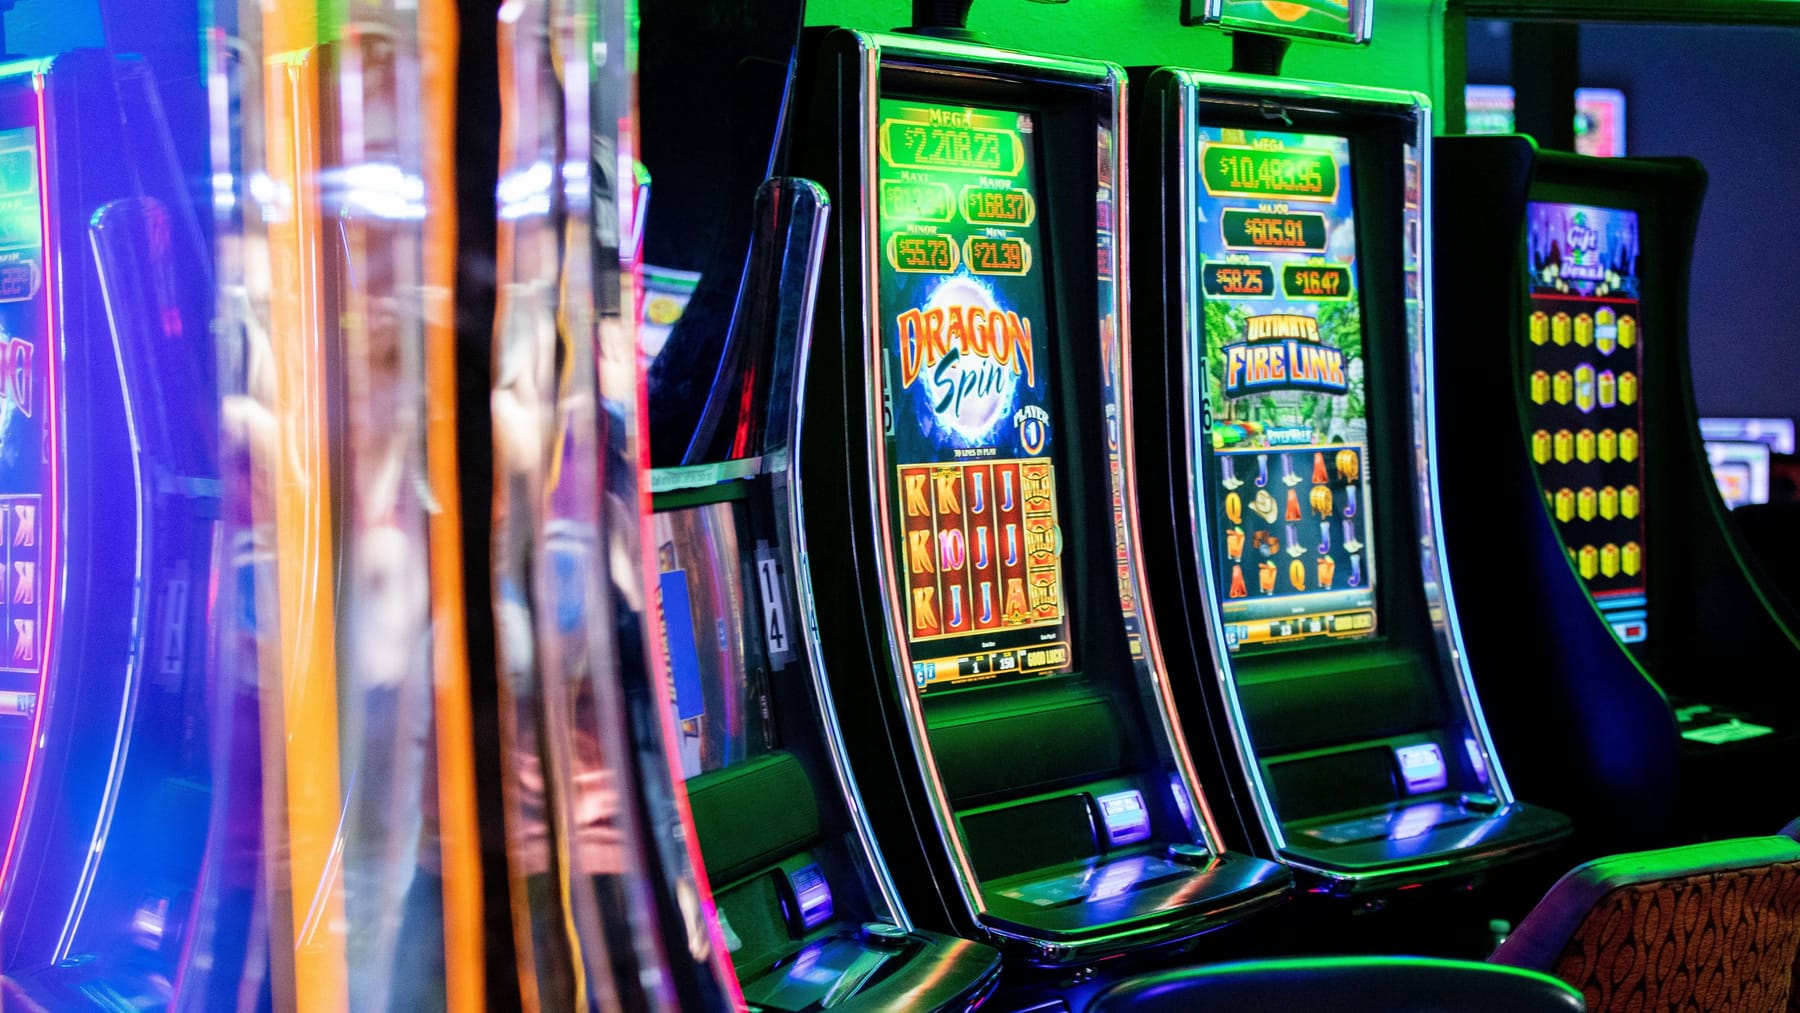 NRW: Fälle von illegalem Glücksspiel fast verzehnfacht